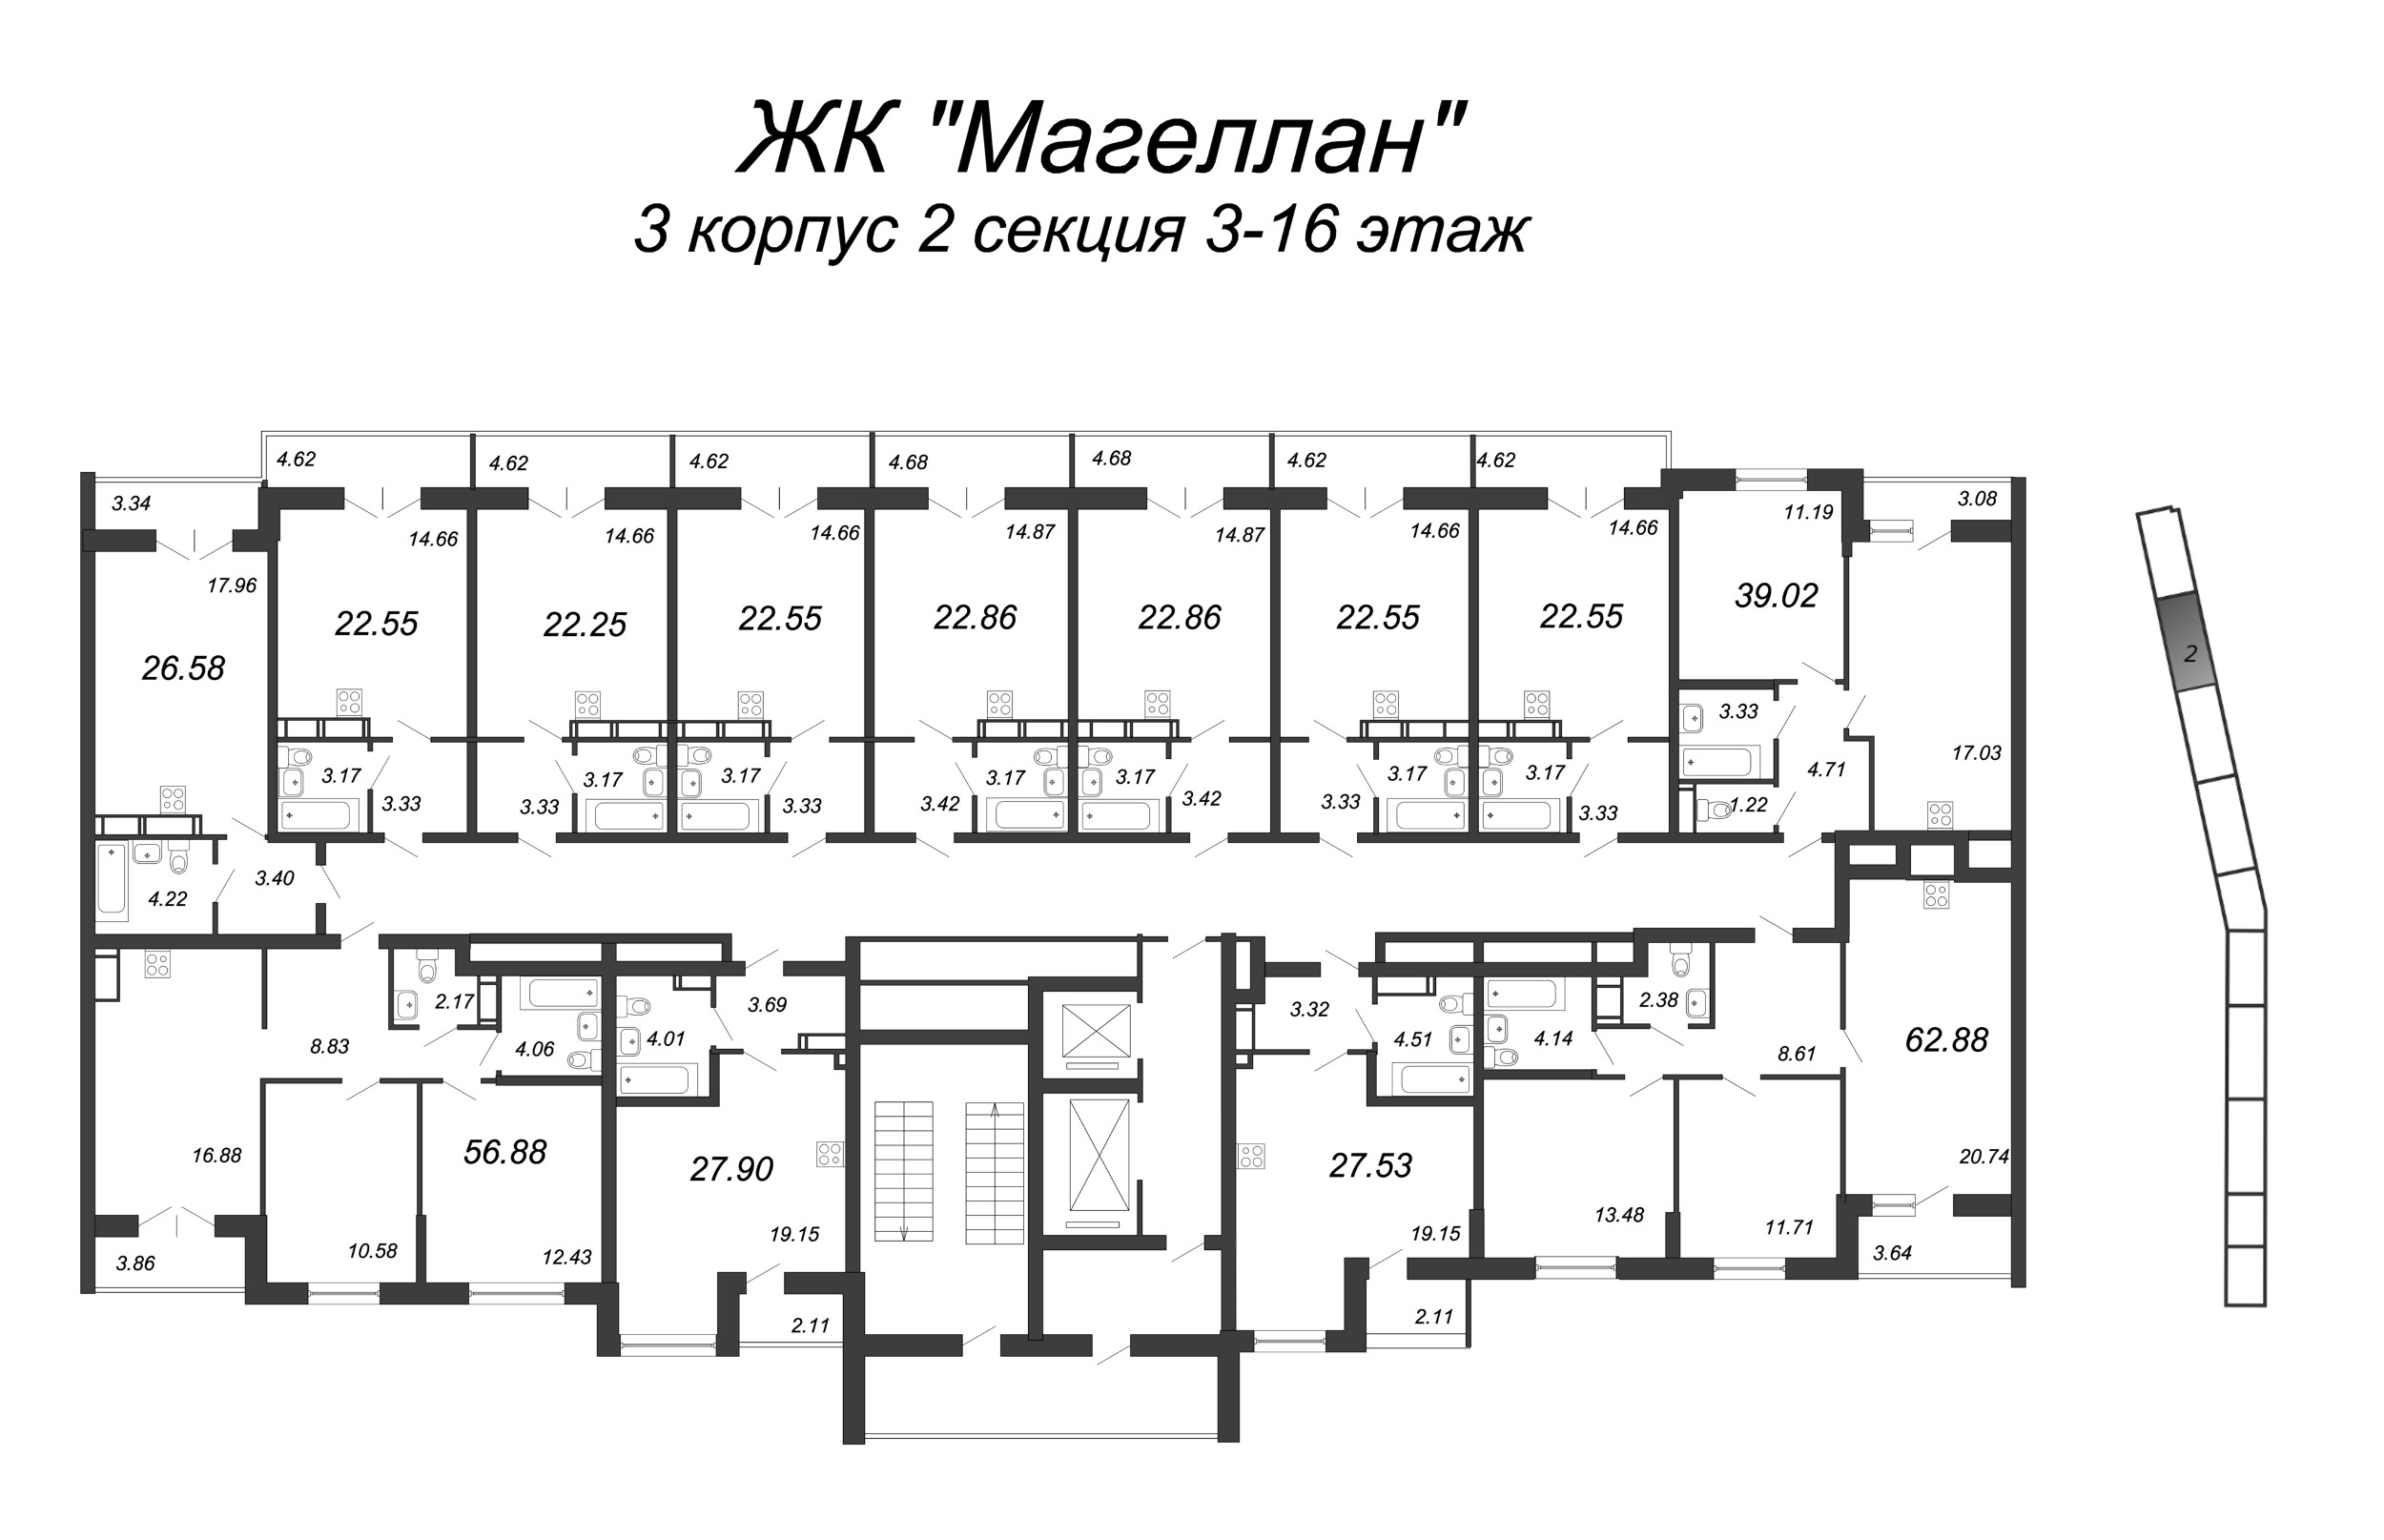 2-комнатная (Евро) квартира, 39.1 м² в ЖК "Магеллан" - планировка этажа